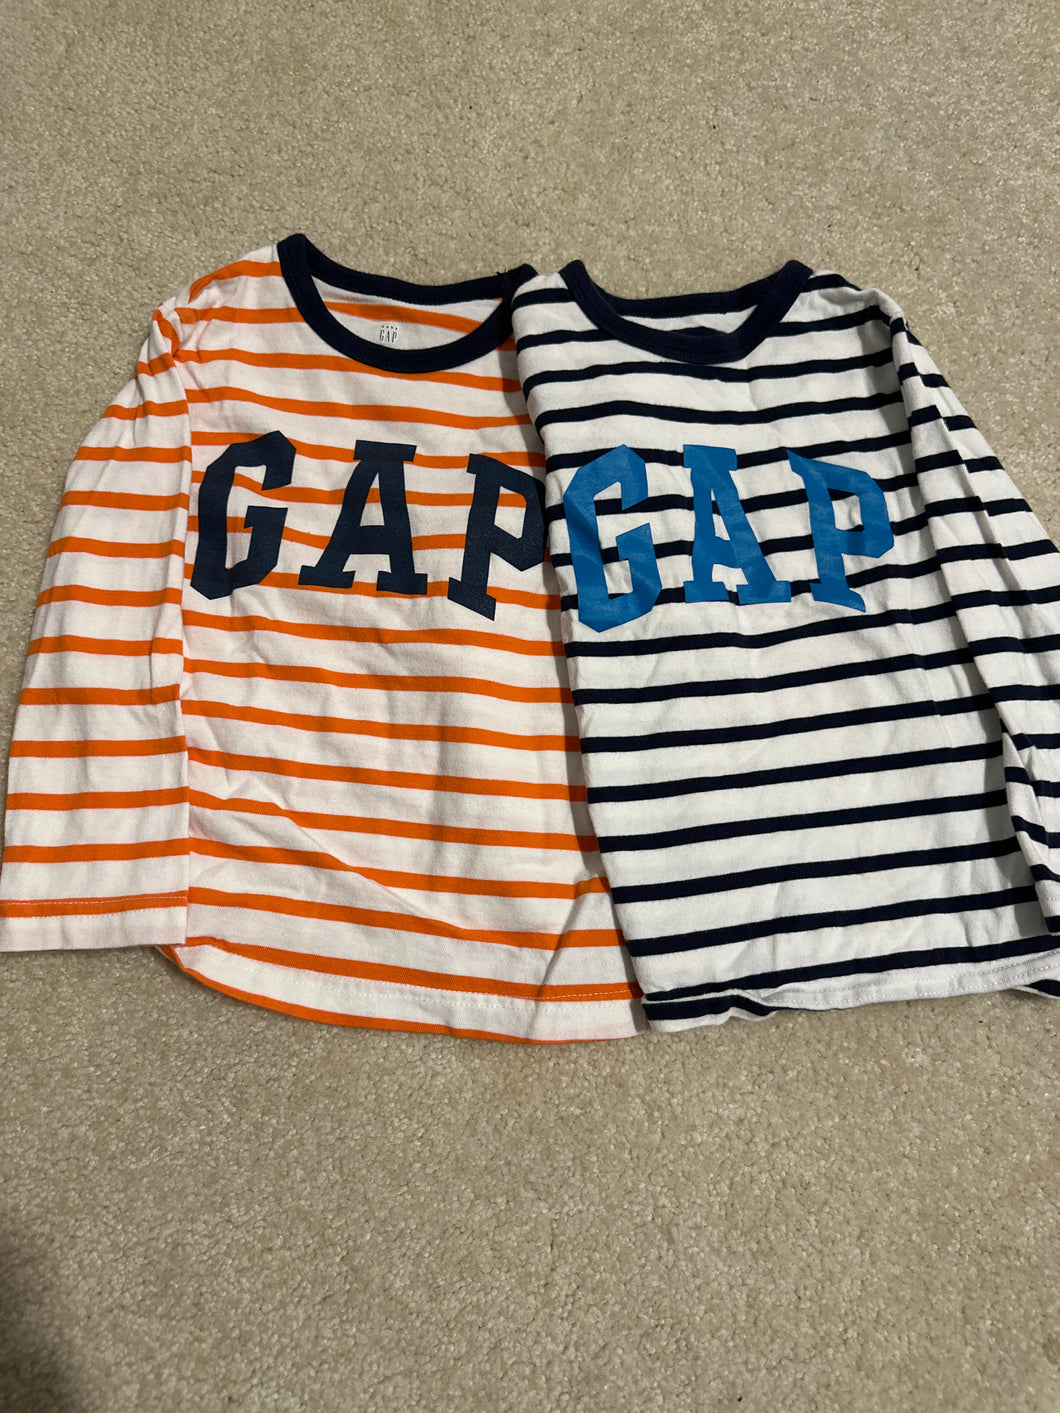 Set of 2 Gap shirts 4